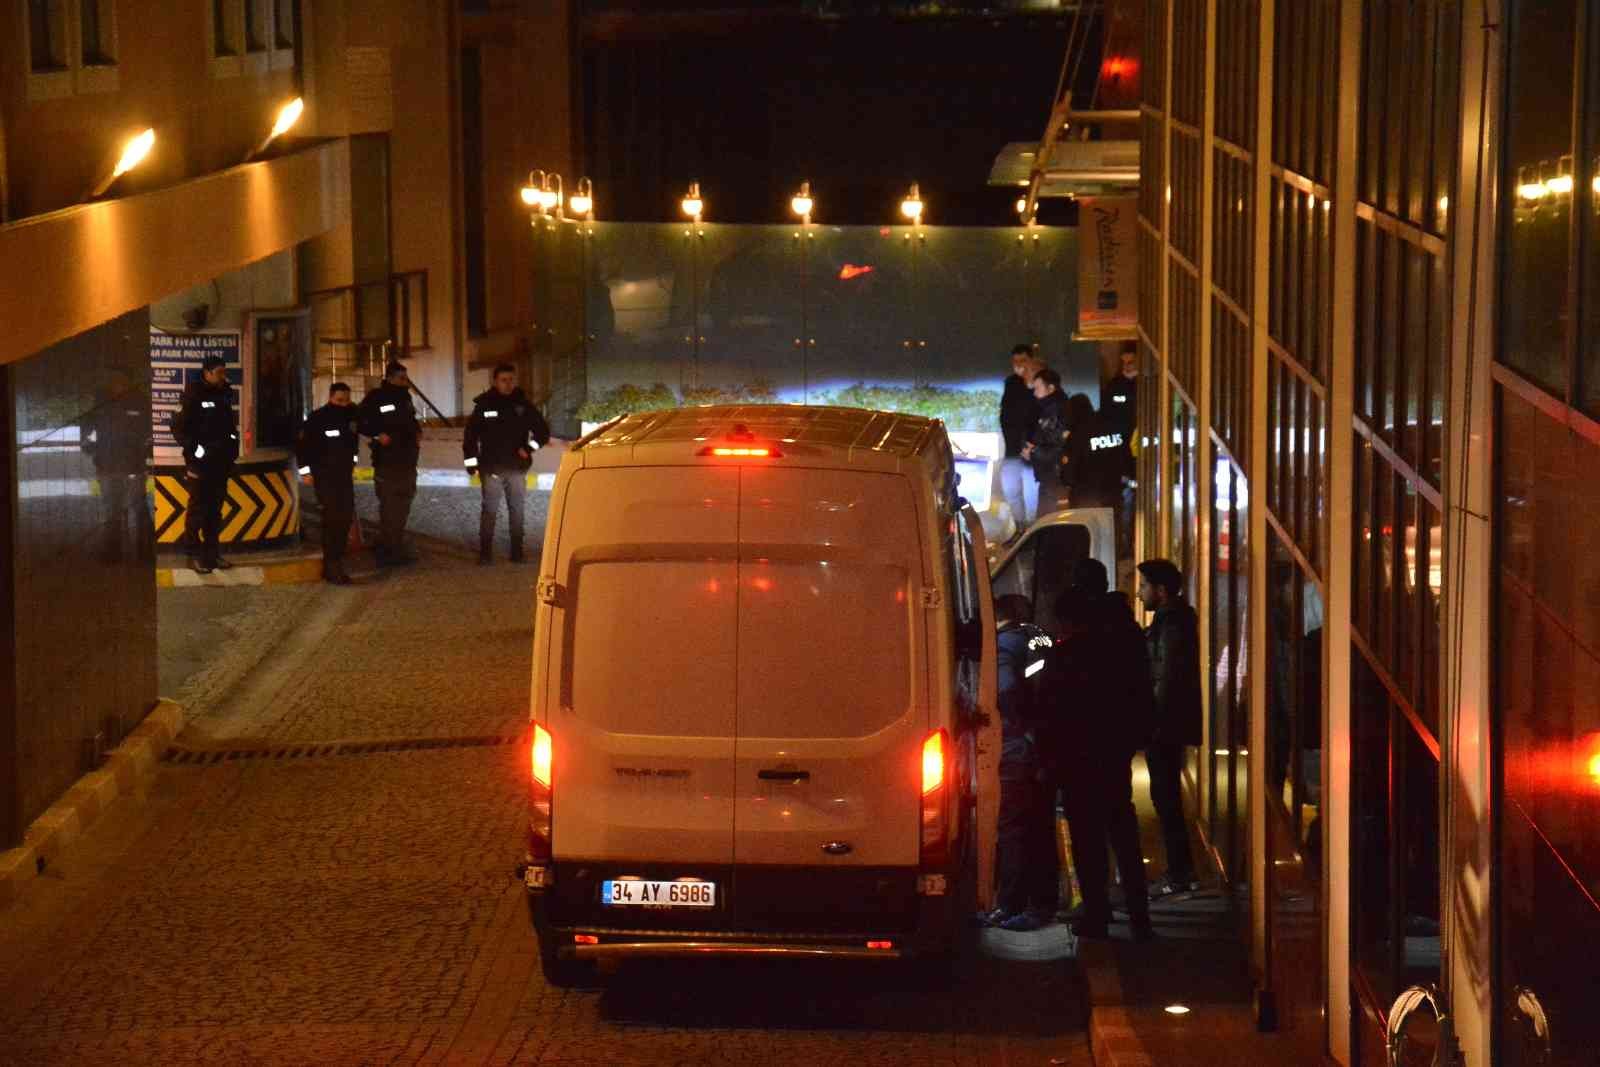 Beşiktaş Ortaköy’de otelin 7’inci katından düşen kadın ağır yaralandı #istanbul